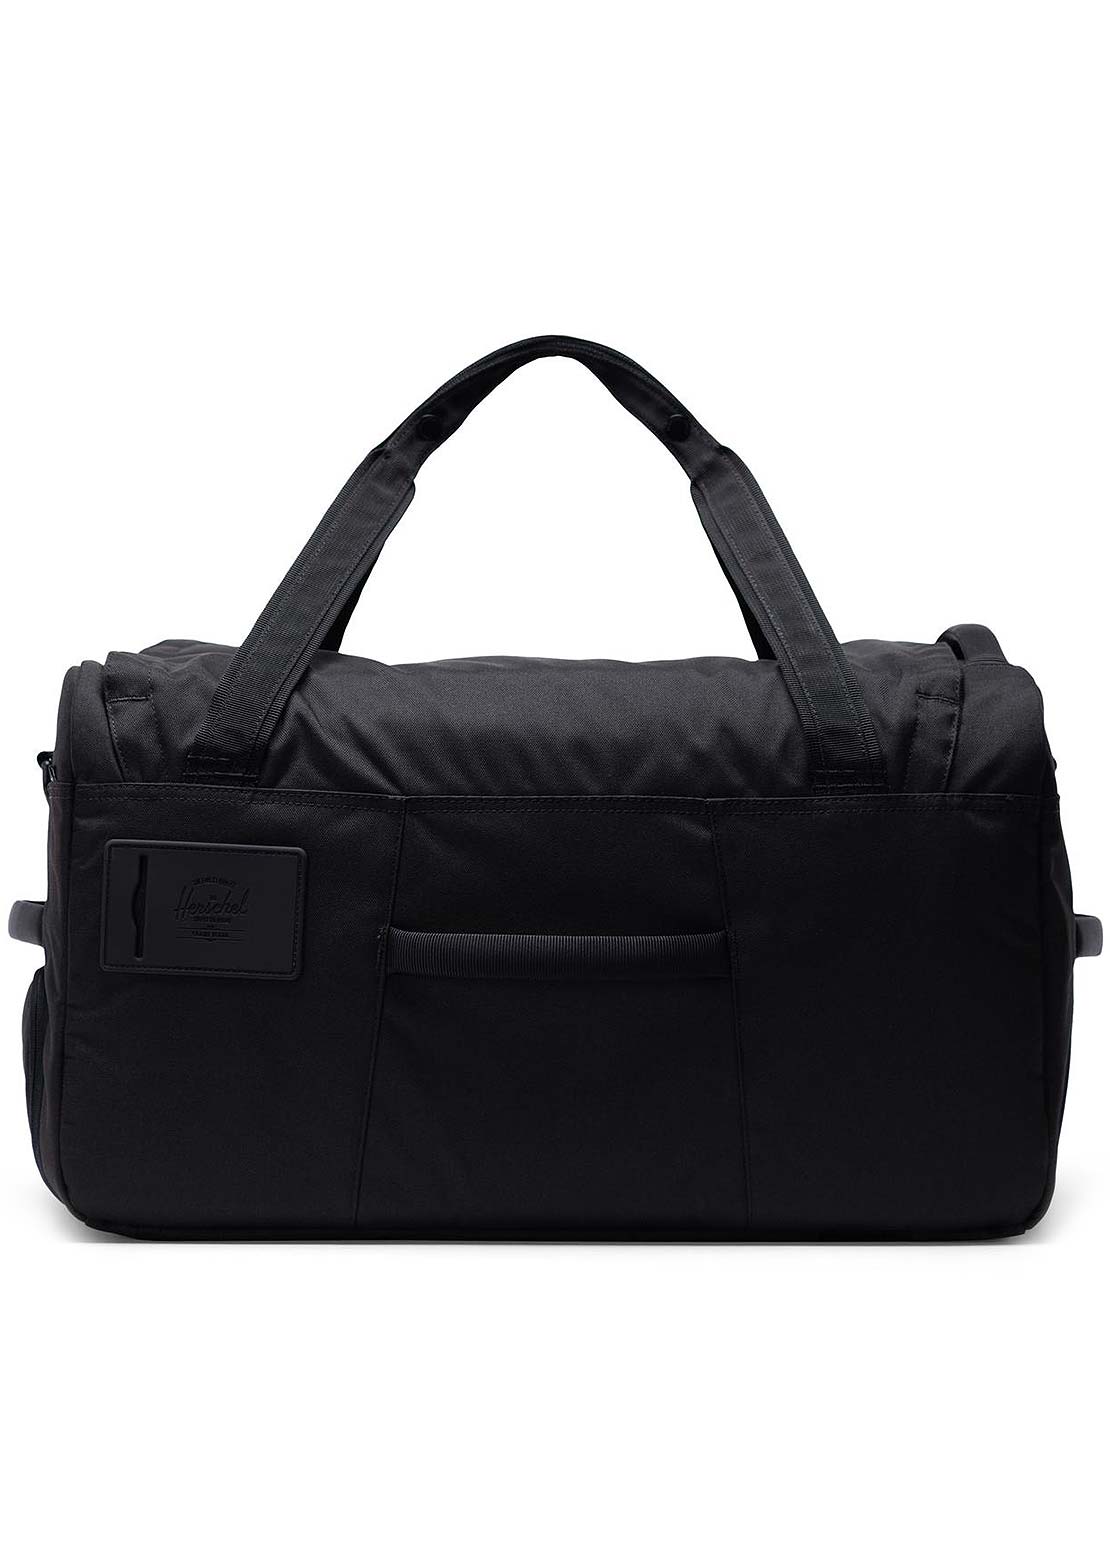 Herschel Outfitter Duffel Bag Black